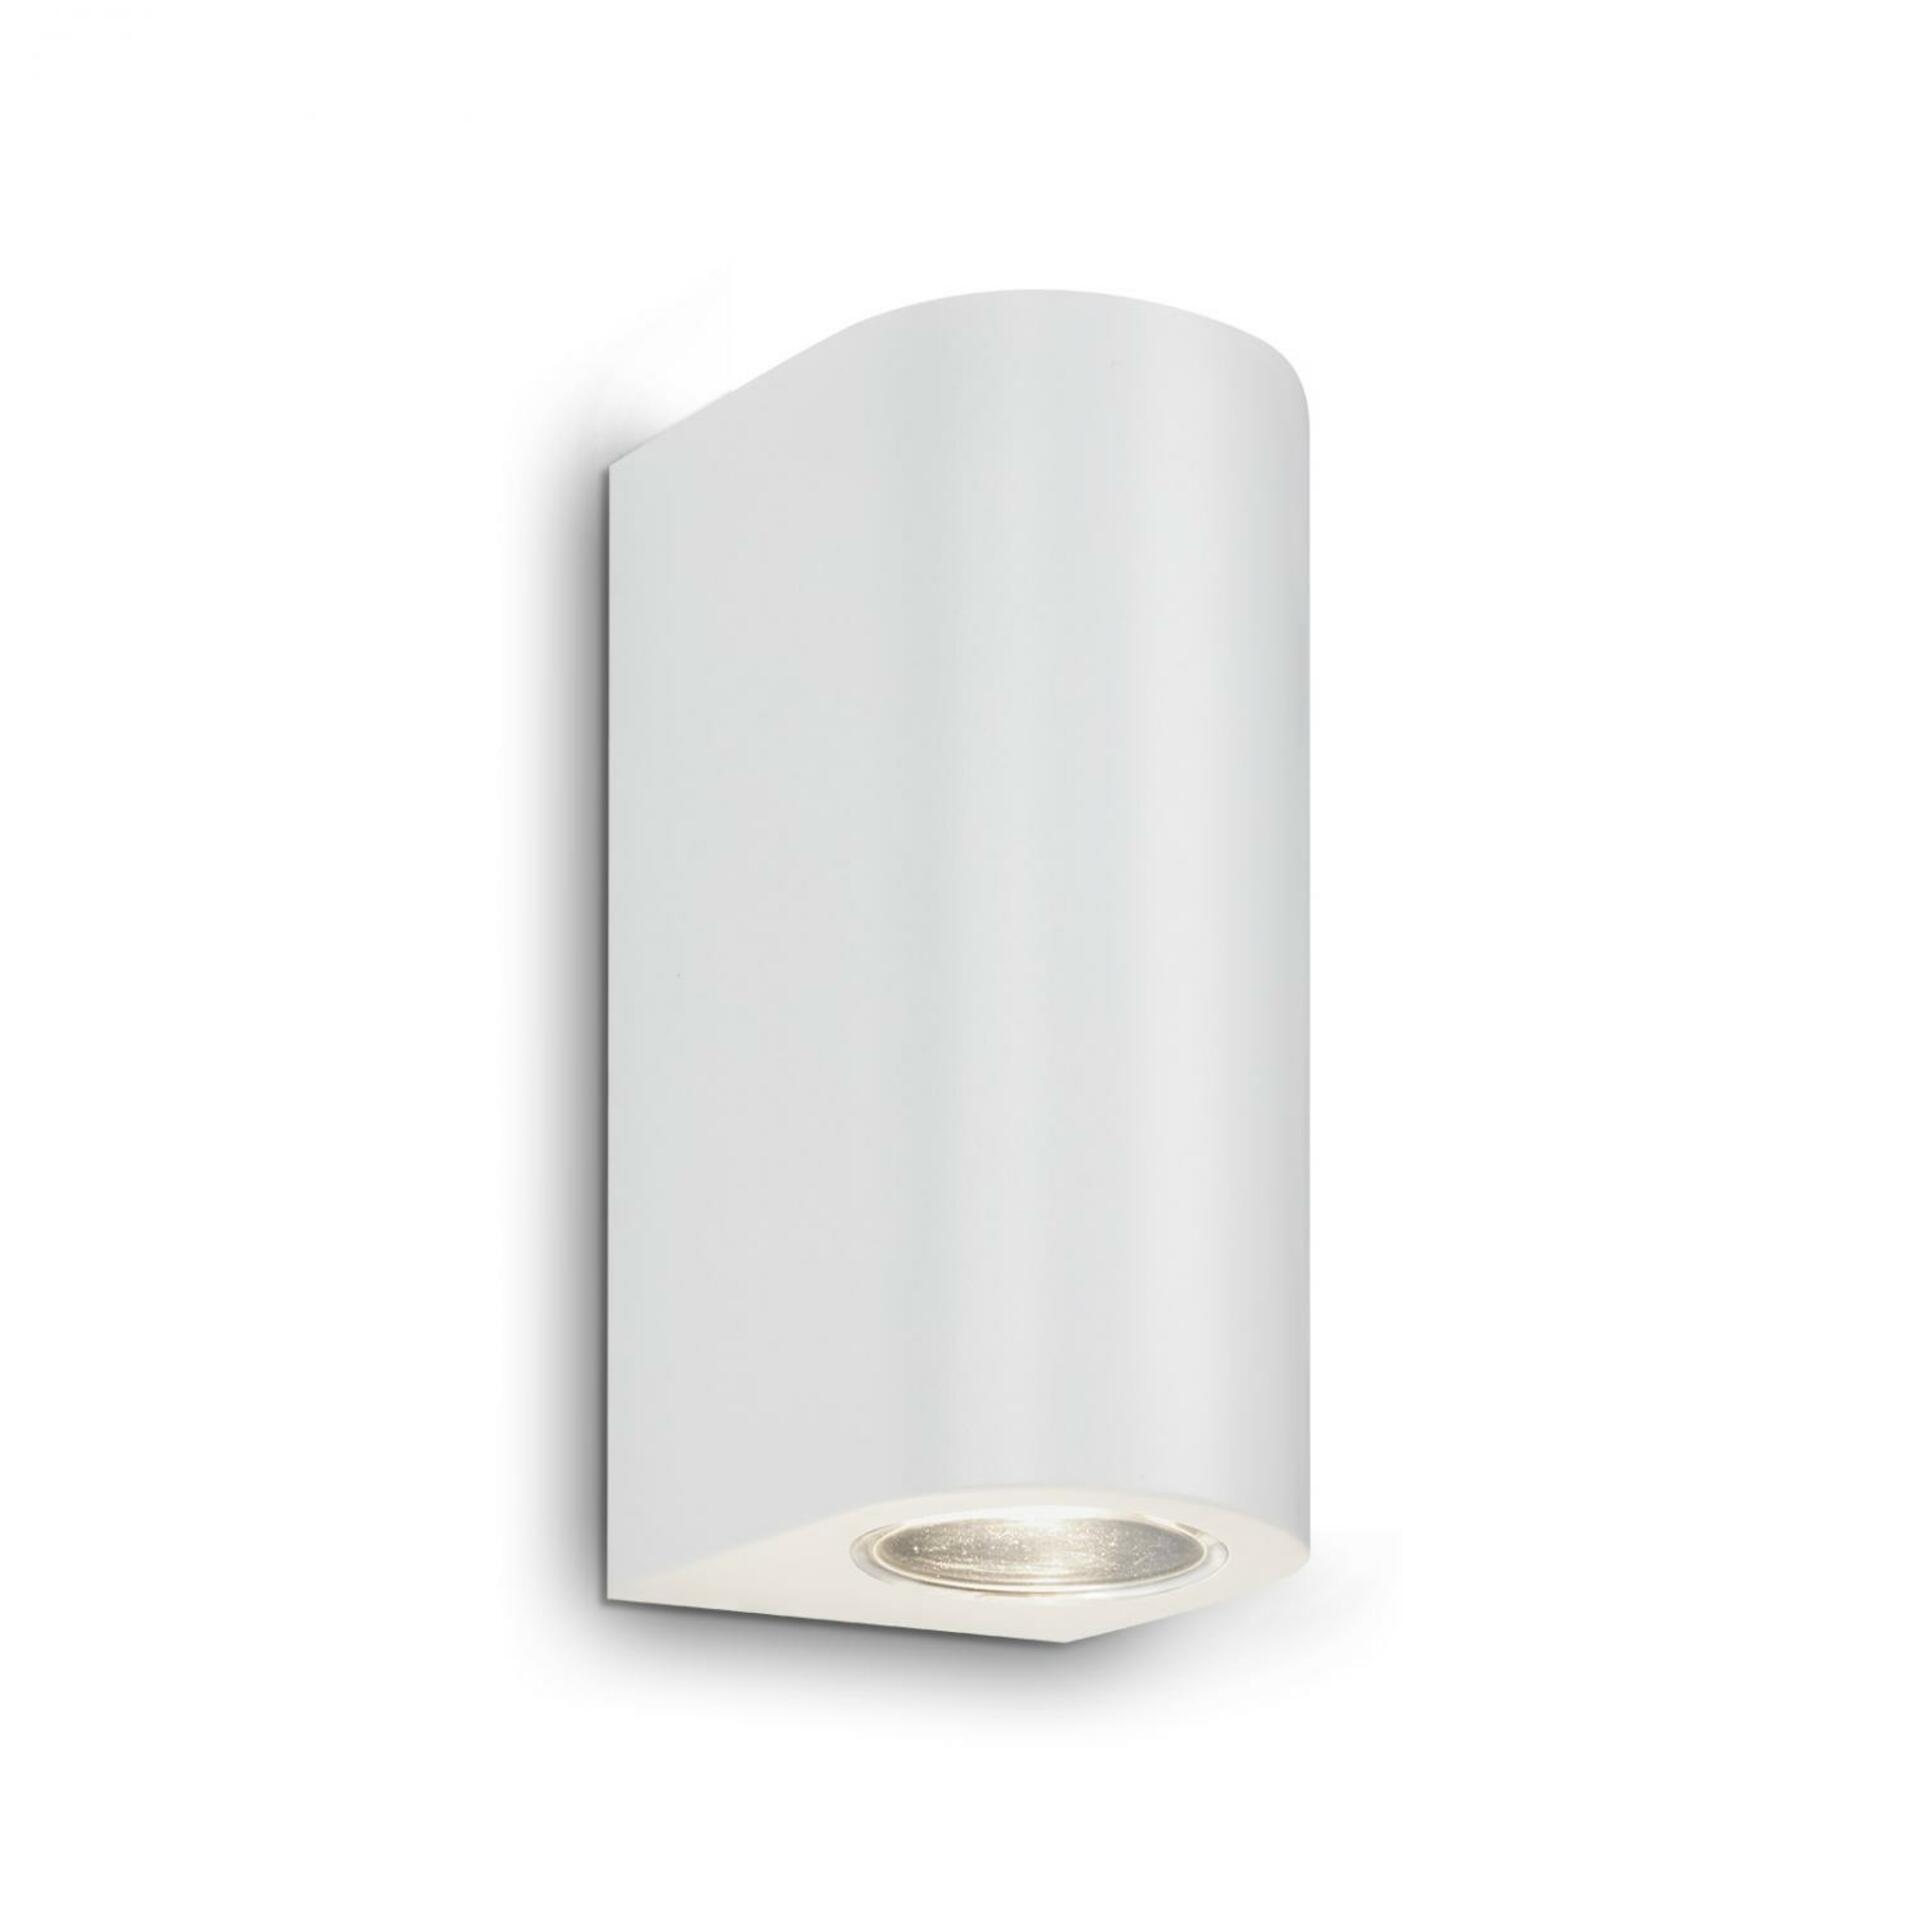 BRILONER LED venkovní svítidlo, 15,5 cm, 2x GU10, 4,7 W, bílé IP44 BRILO 3648-026